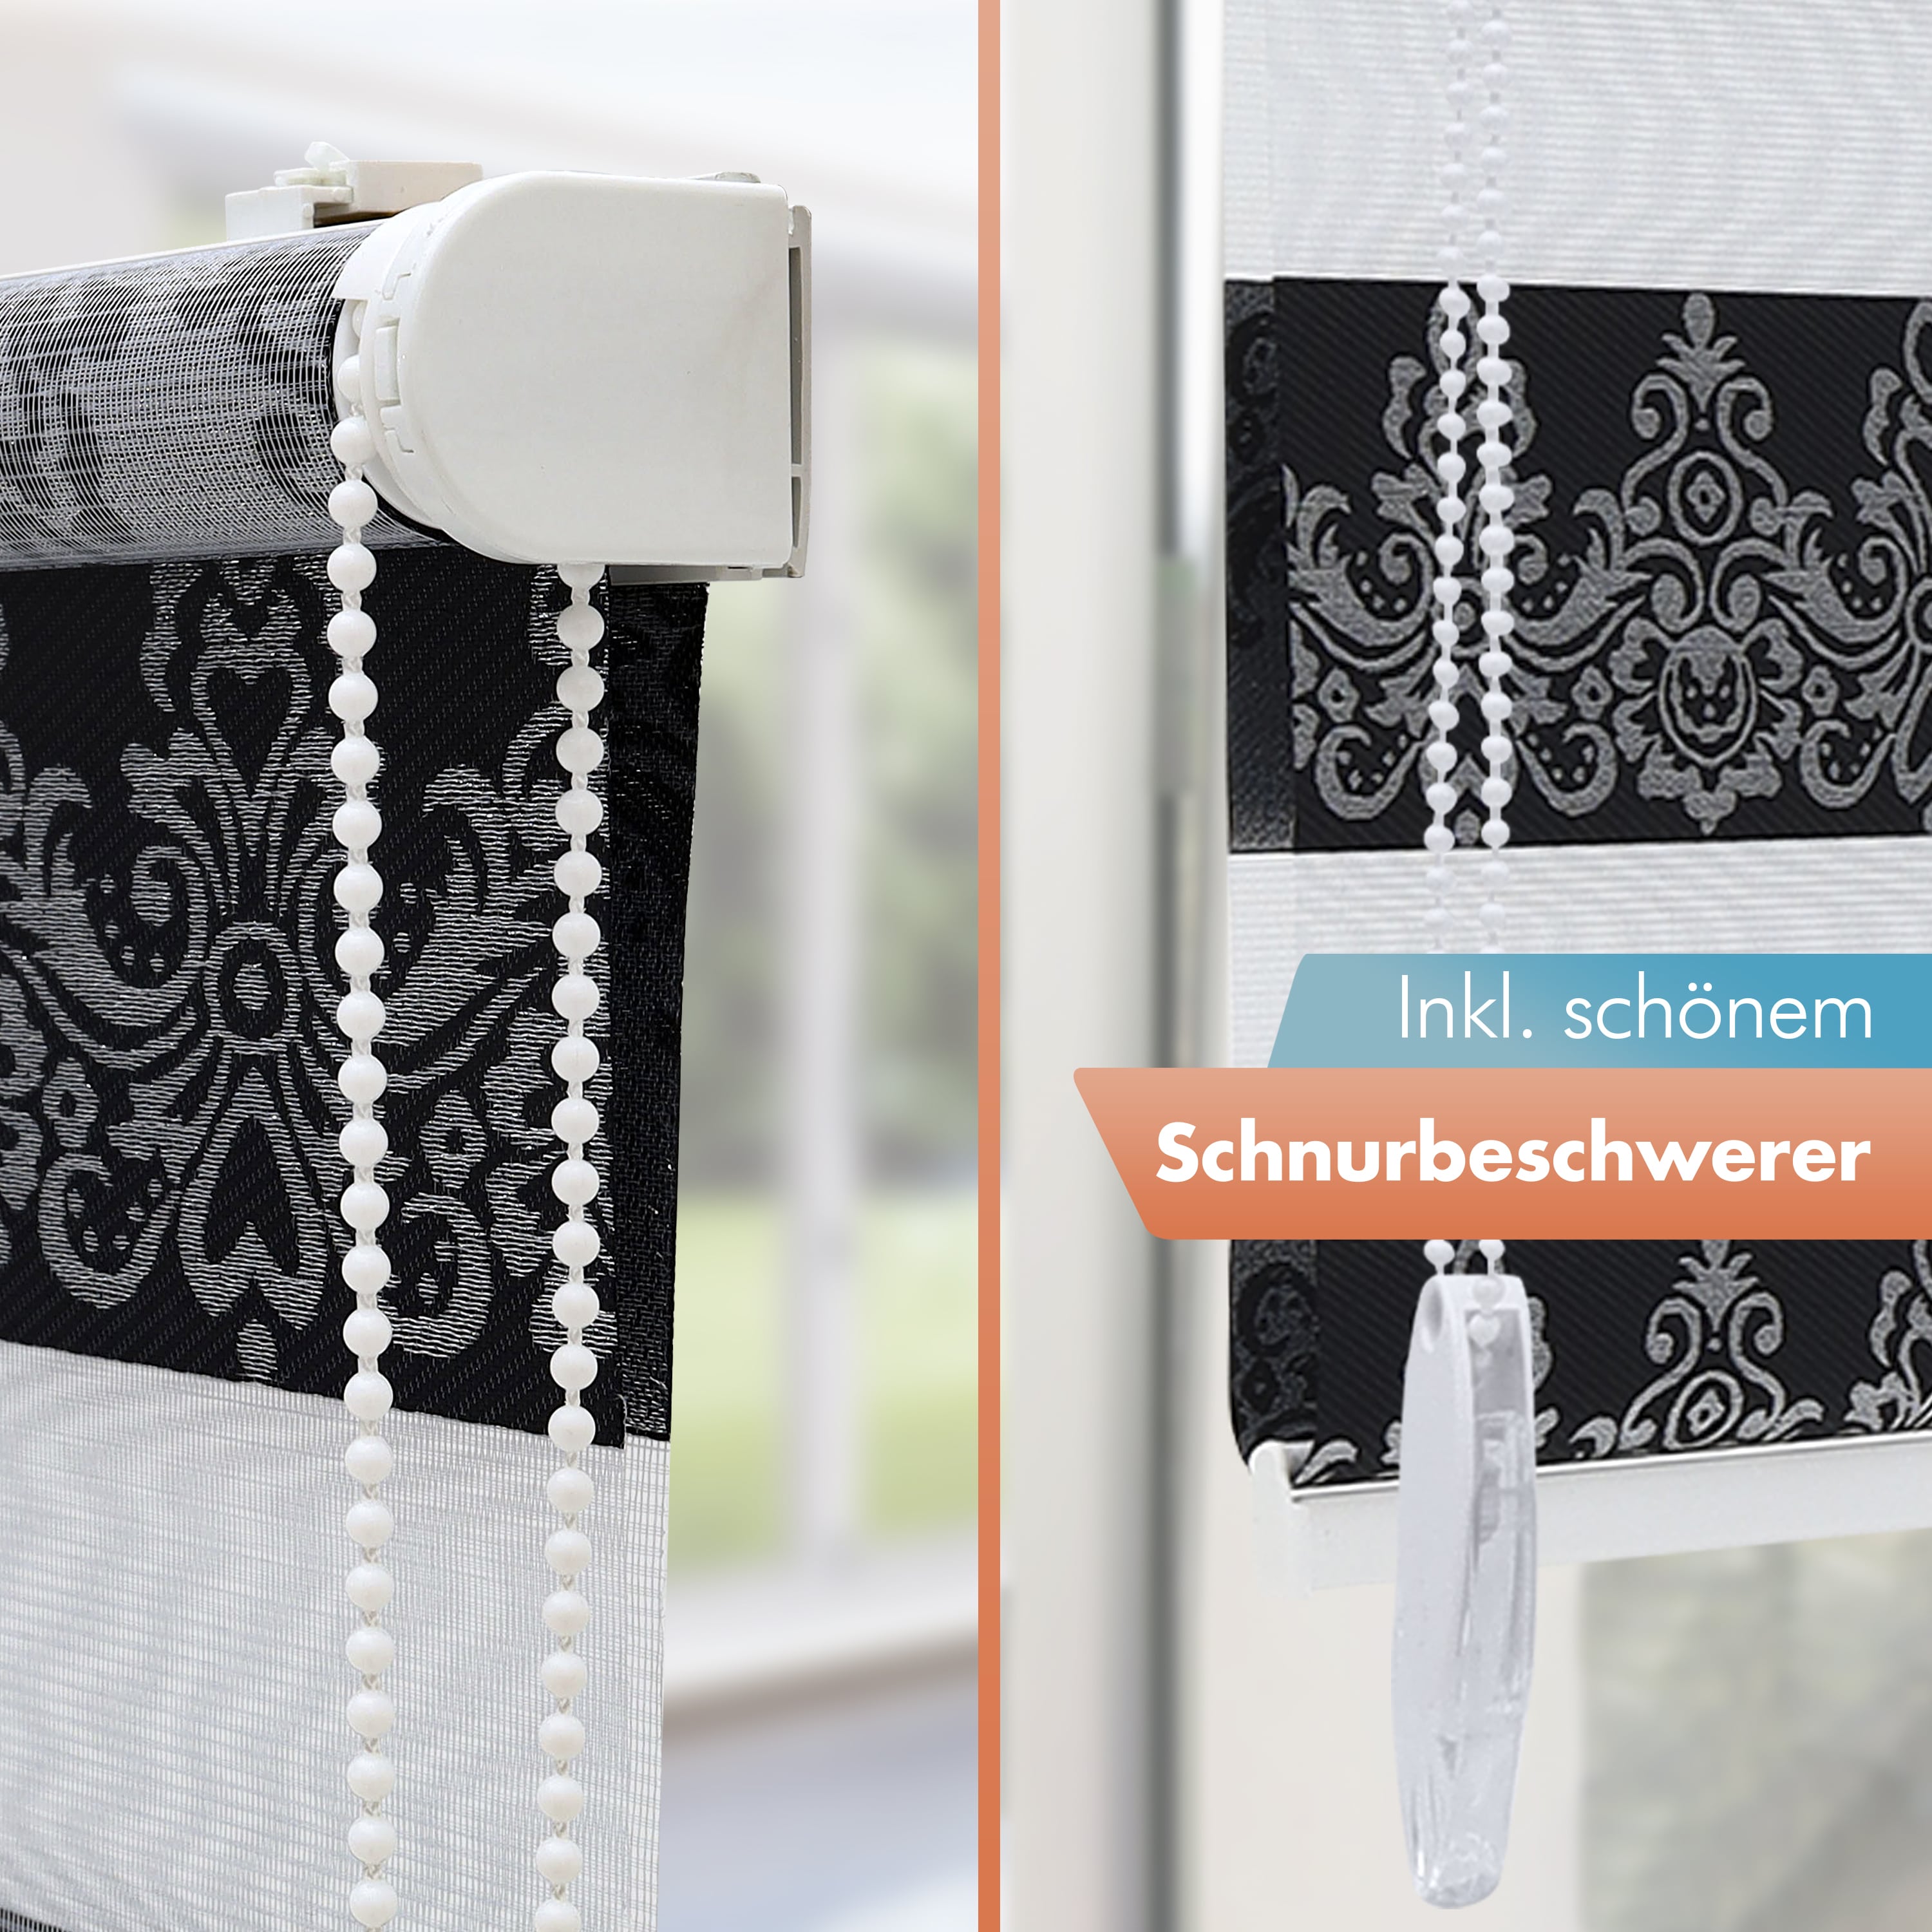 Doppelrollo mit Muster Barock Damask Ornamente - Schwarz Silber - 3in1 - für Fenster, Wand & Decke - inkl. Zubehör - 60 Sek Klemmfix Montage